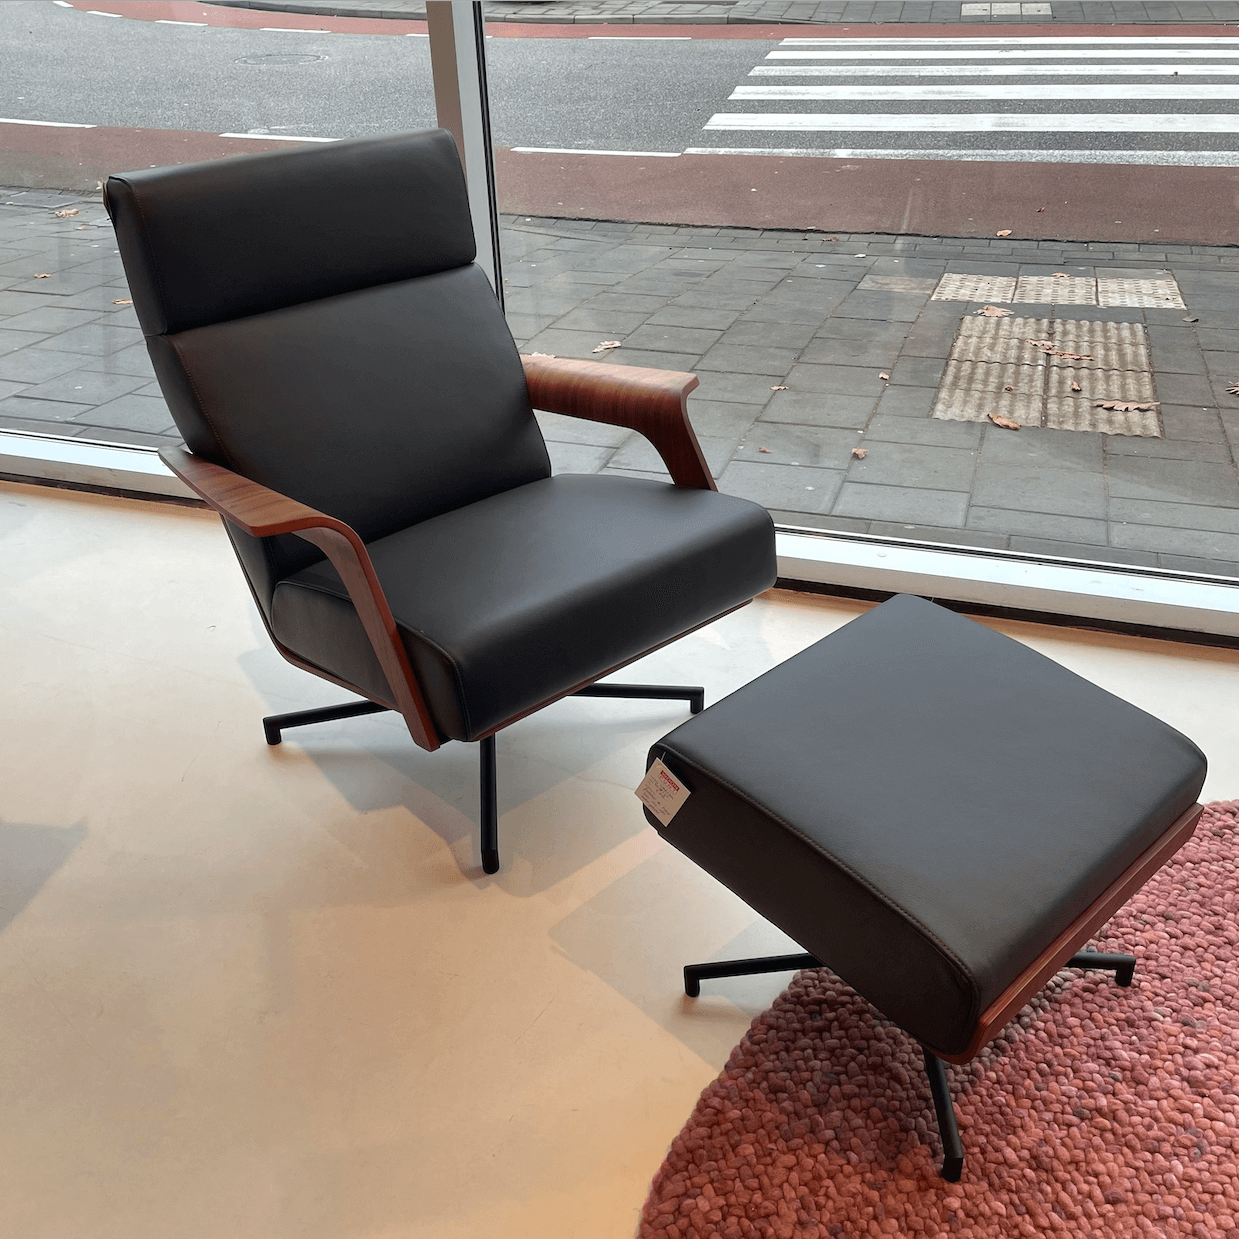 Harvink De Kaap fauteuil & footstool Woonpunt interieurs Zeist